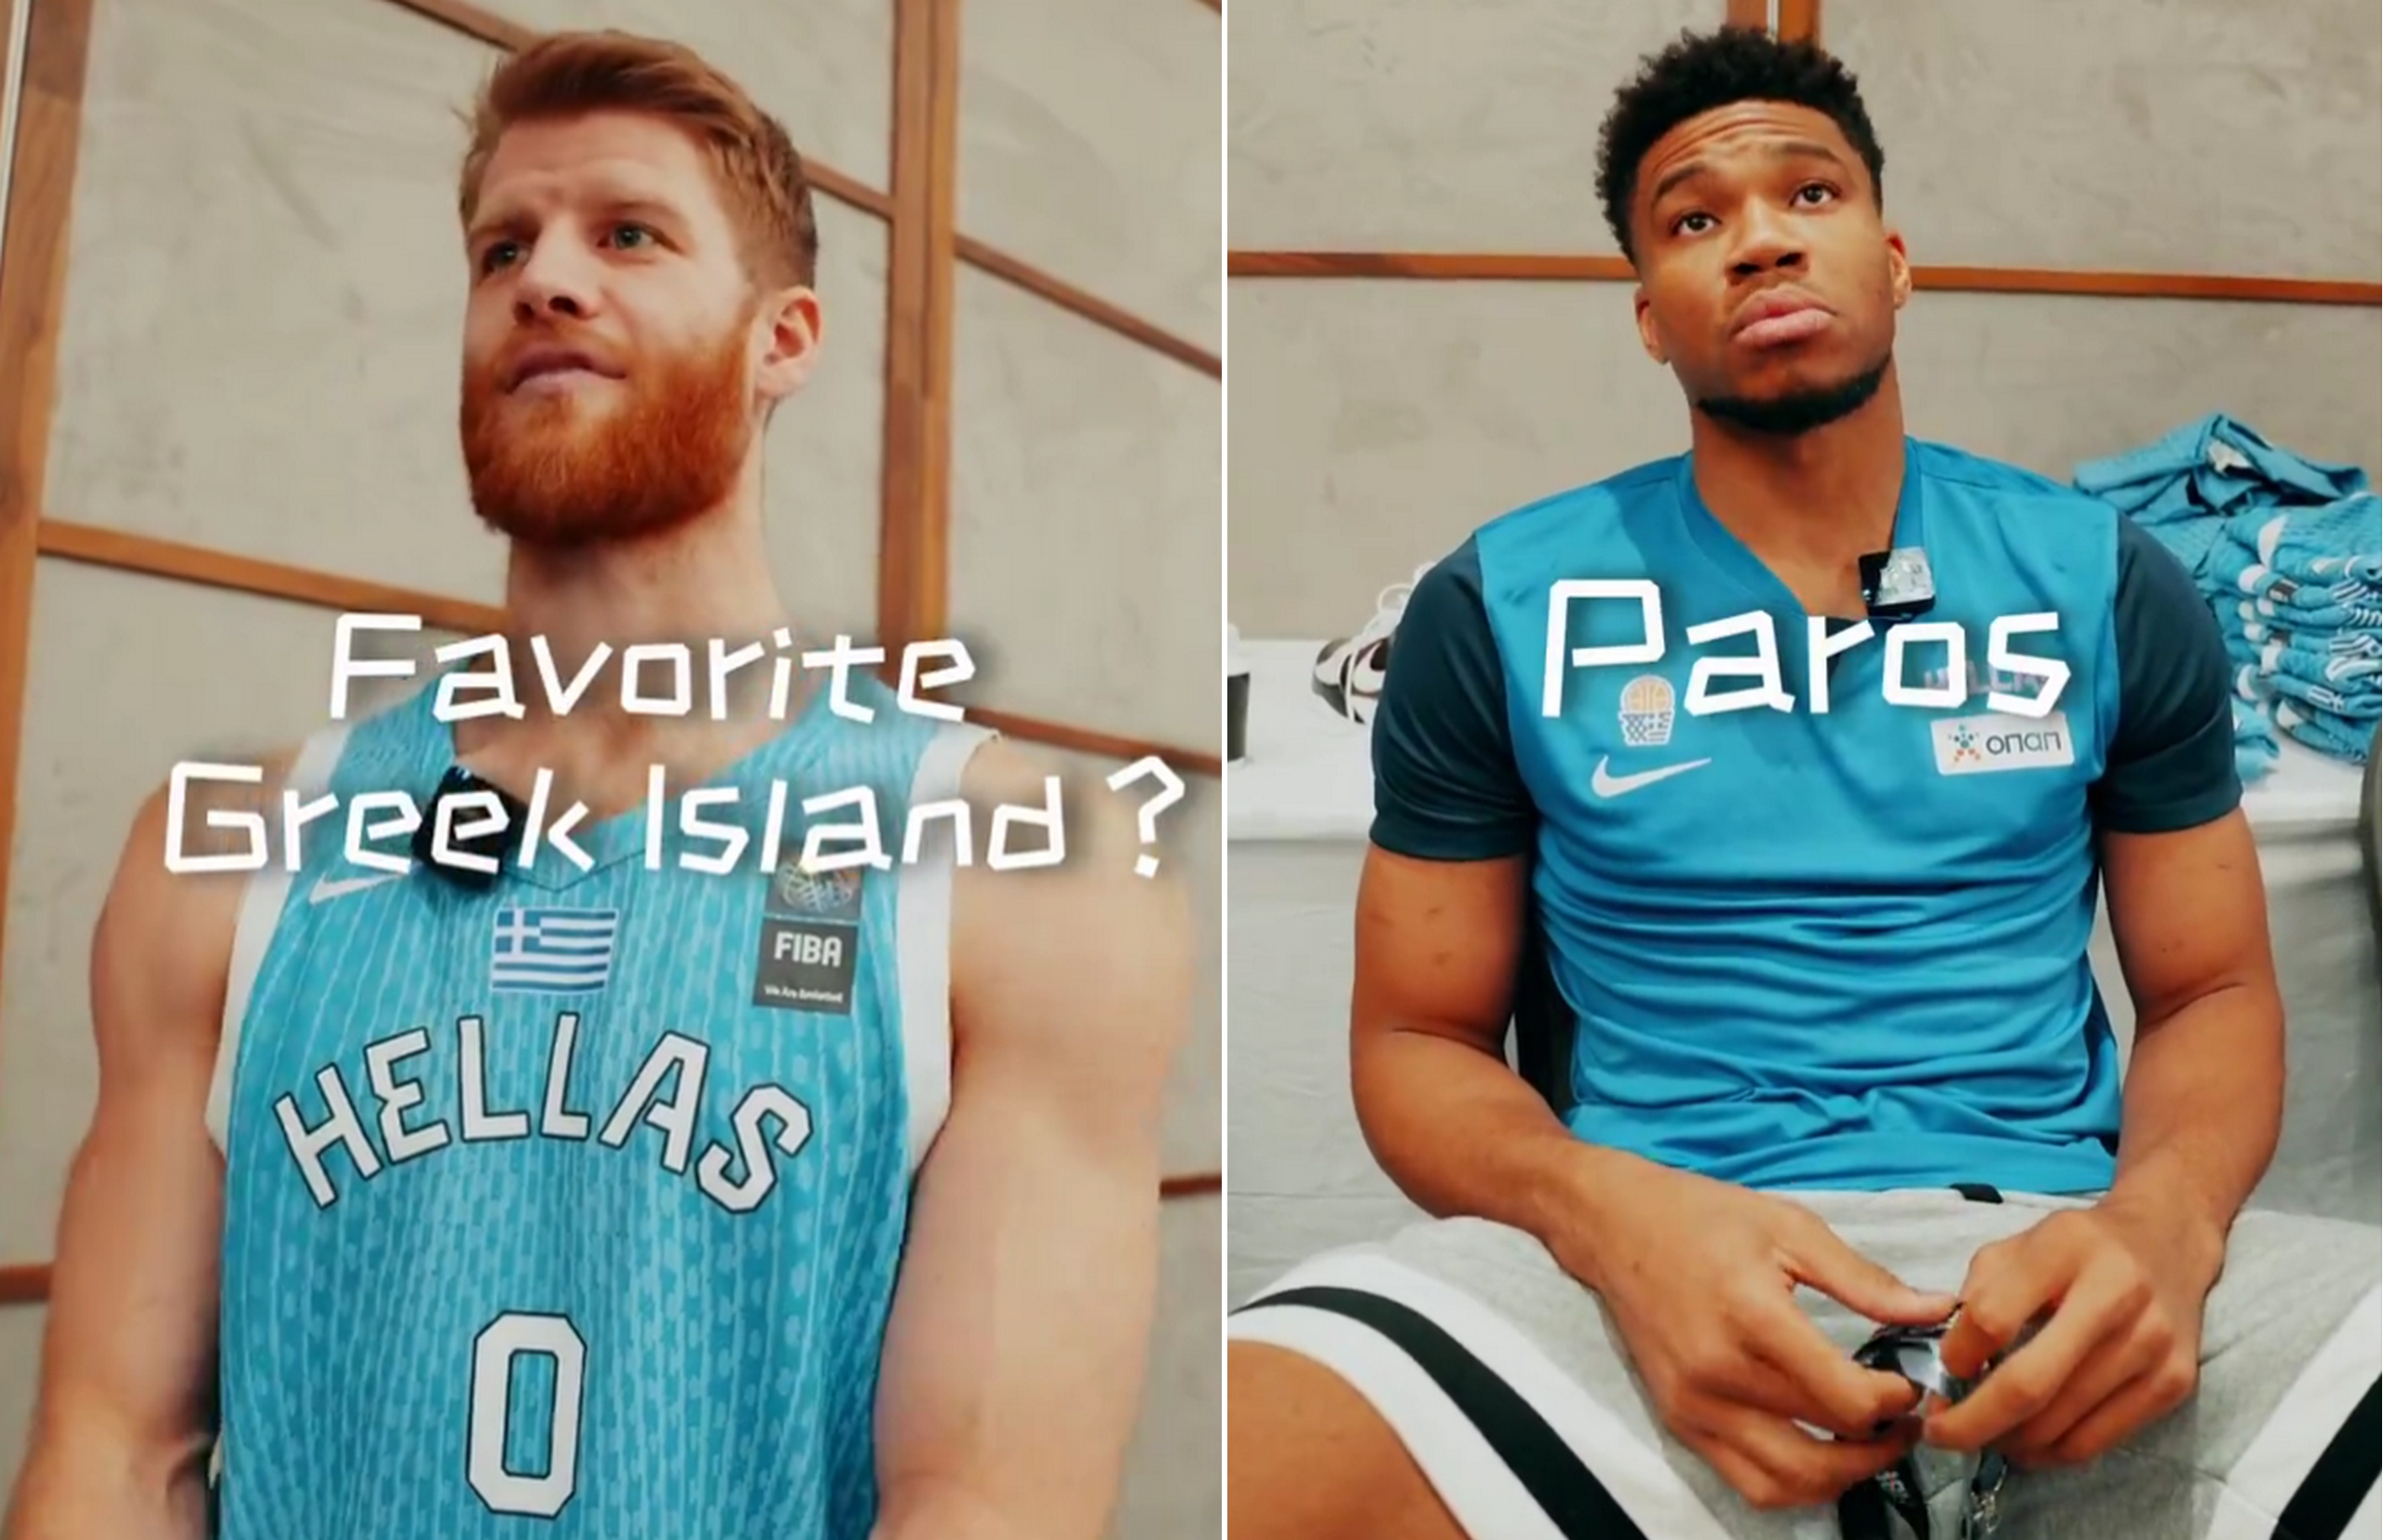 Εθνική μπάσκετ: Η FIBA ρώτησε τους Έλληνες παίκτες για το αγαπημένο τους νησί